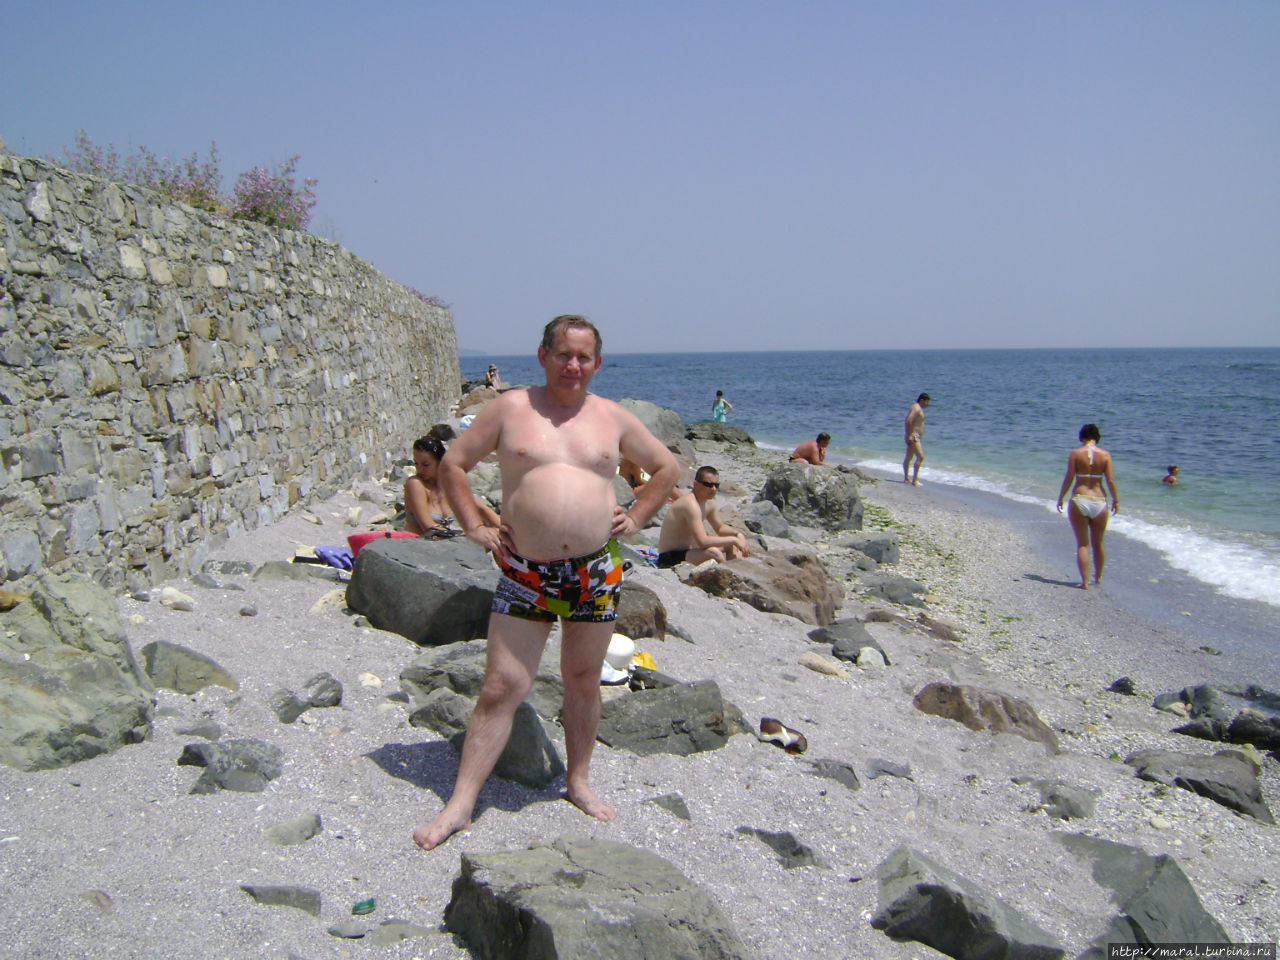 Пляж в Несебре невелик и каменист, но места для загорания и купания всем хватит